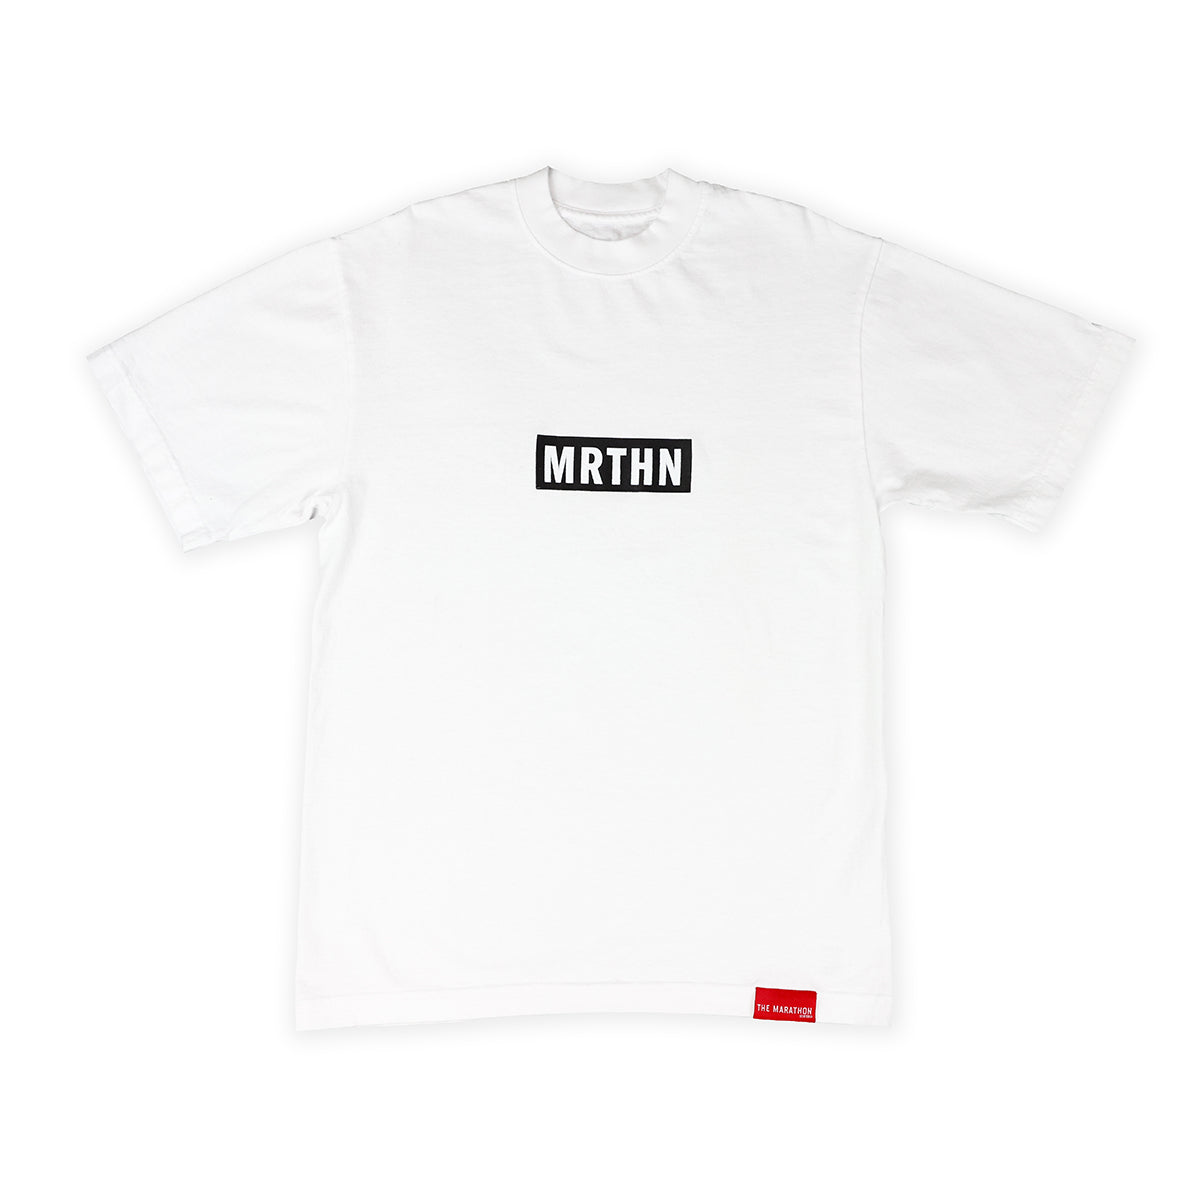 MRTHN T-shirt - White/Black - Front